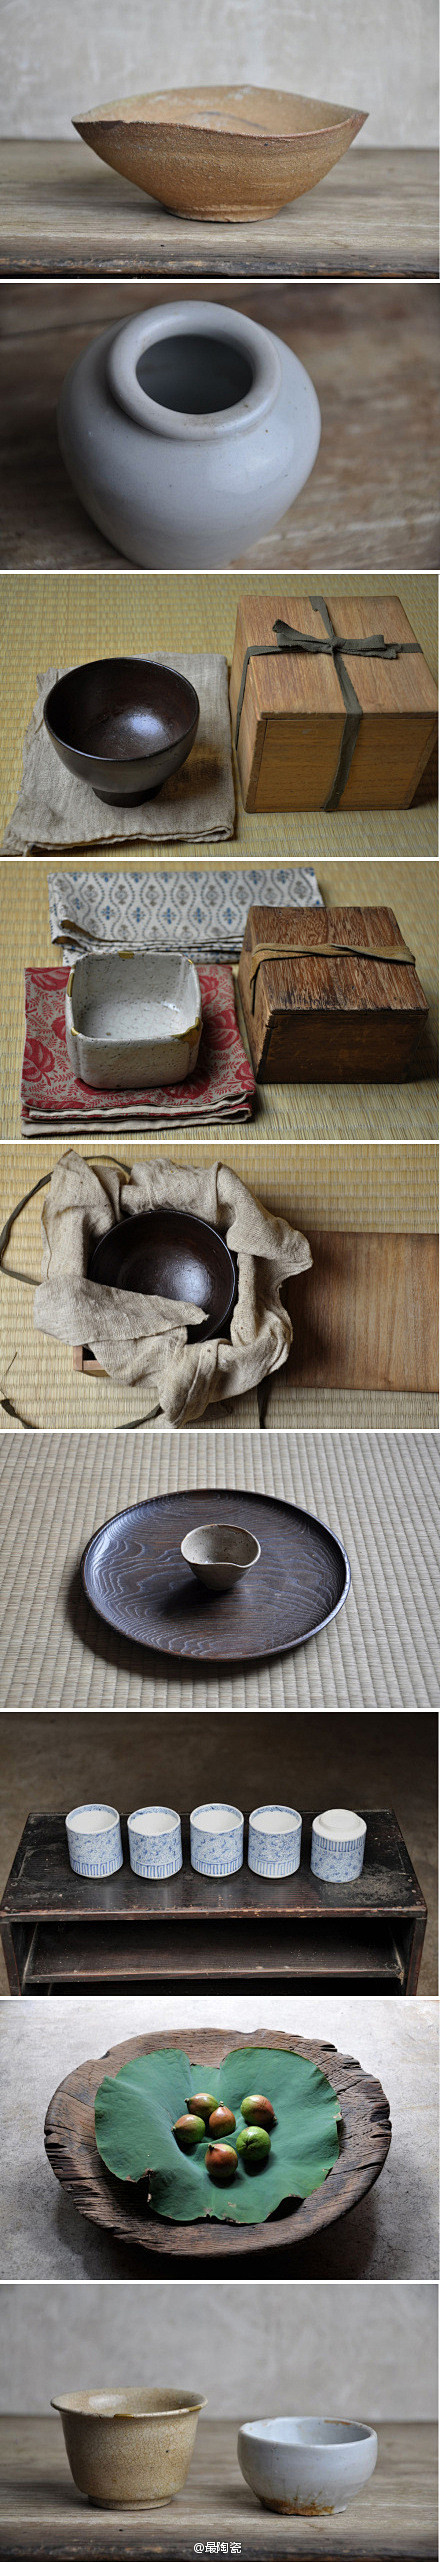 日本古朴陶器